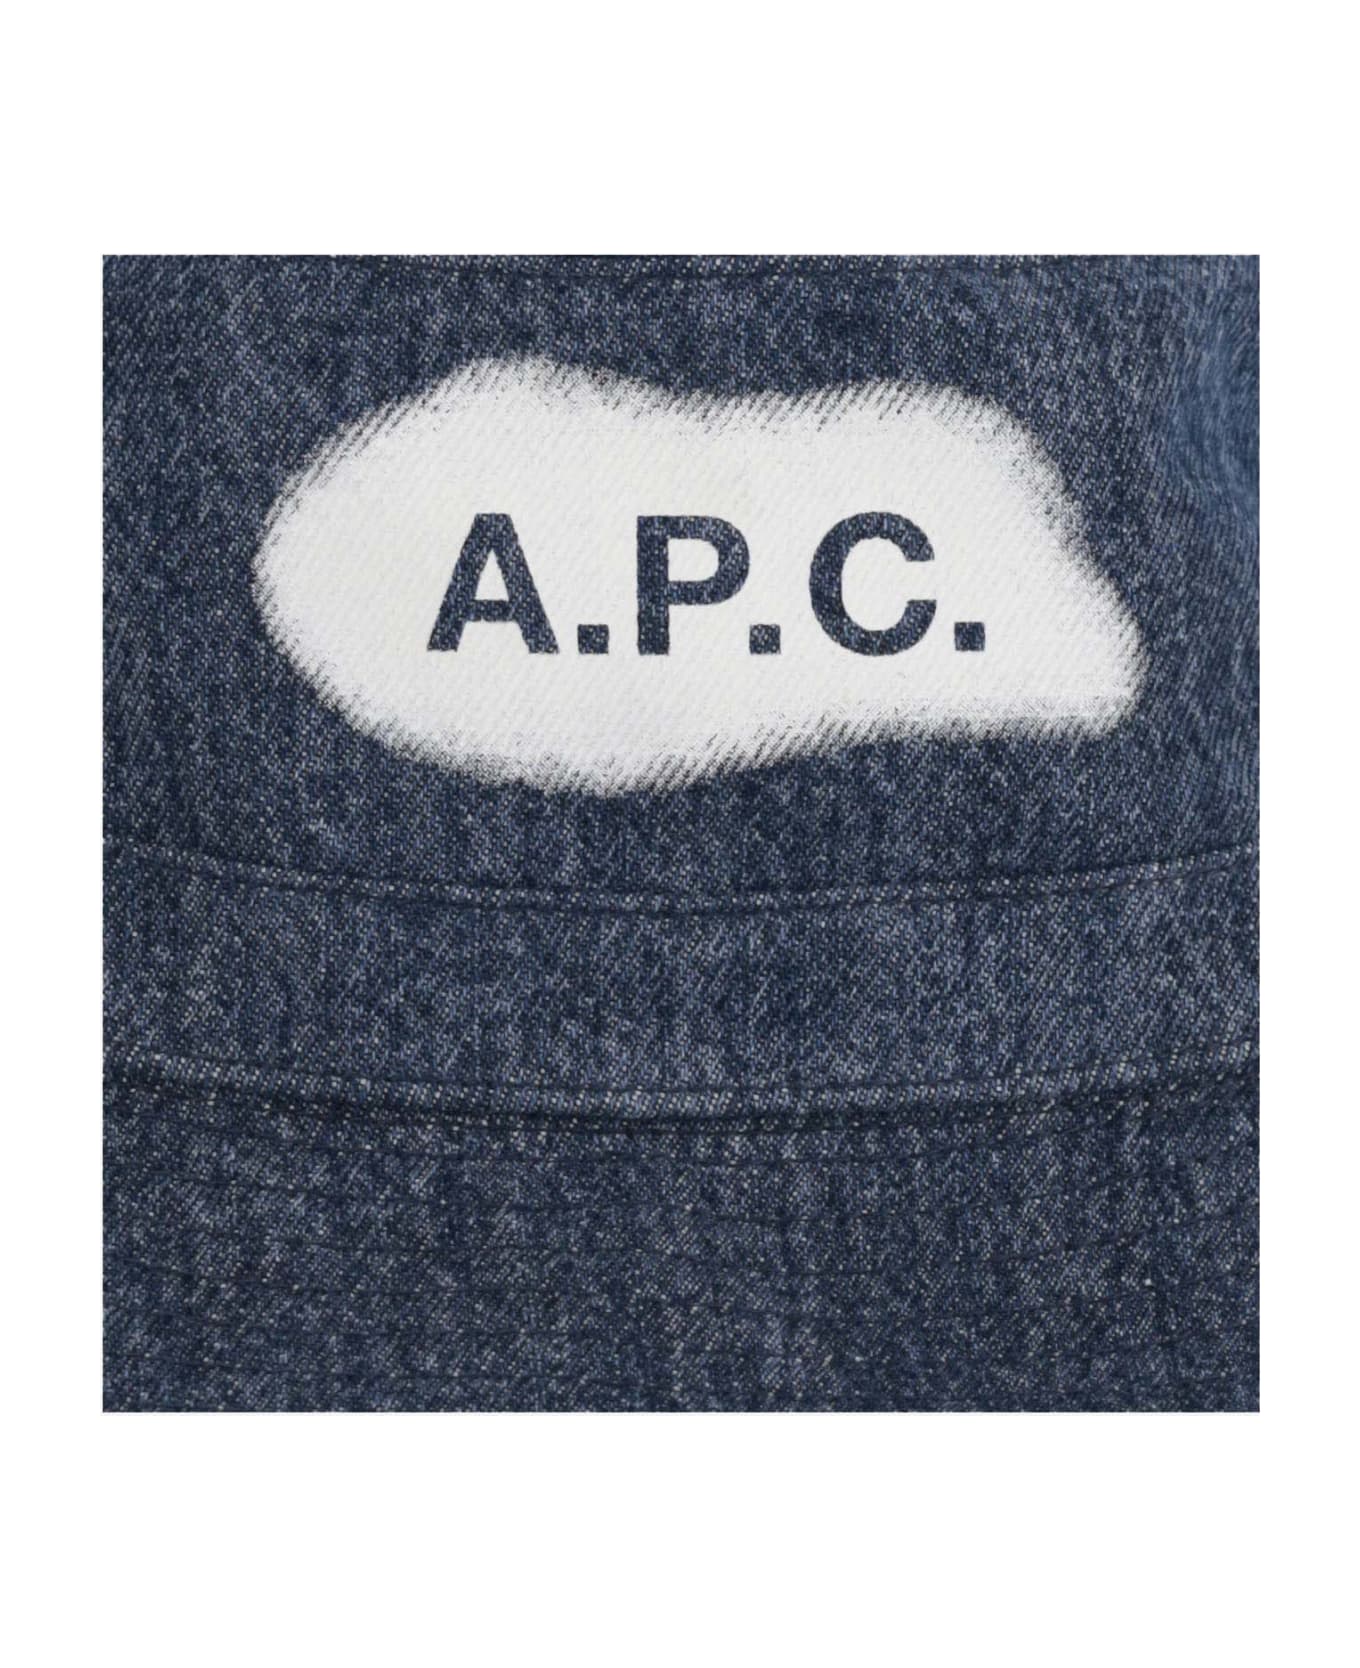 A.P.C. Denim Bucket Hat - Denim